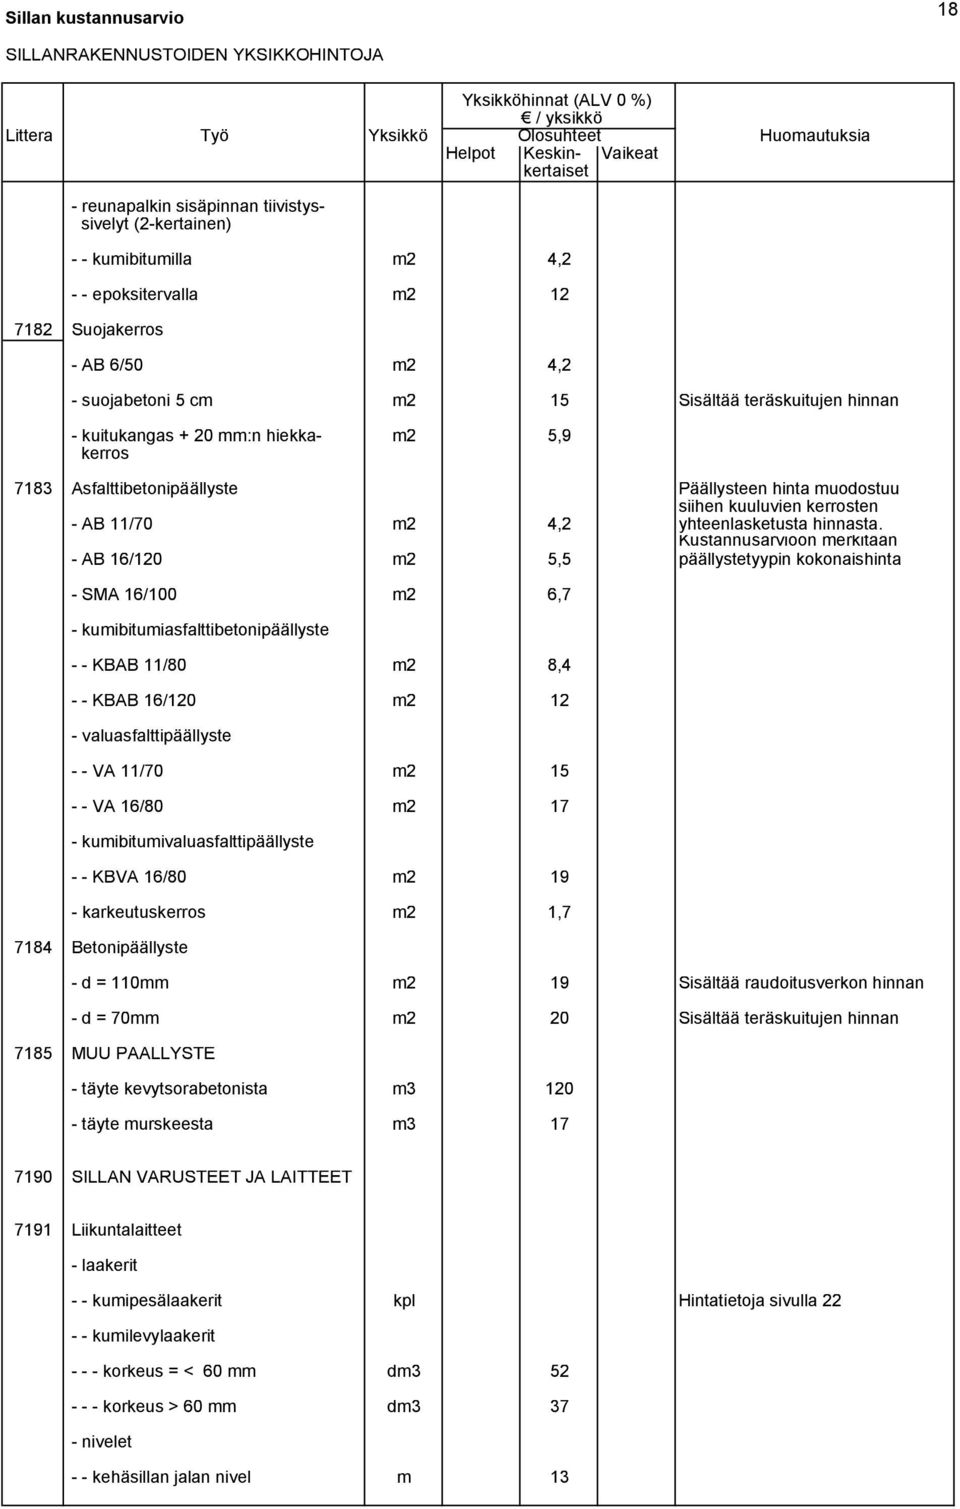 7183 Asfalttibetonipäällyste Päällysteen hinta muodostuu siihen kuuluvien kerrosten - AB 11/70 m2 4,2 yhteenlasketusta hinnasta.